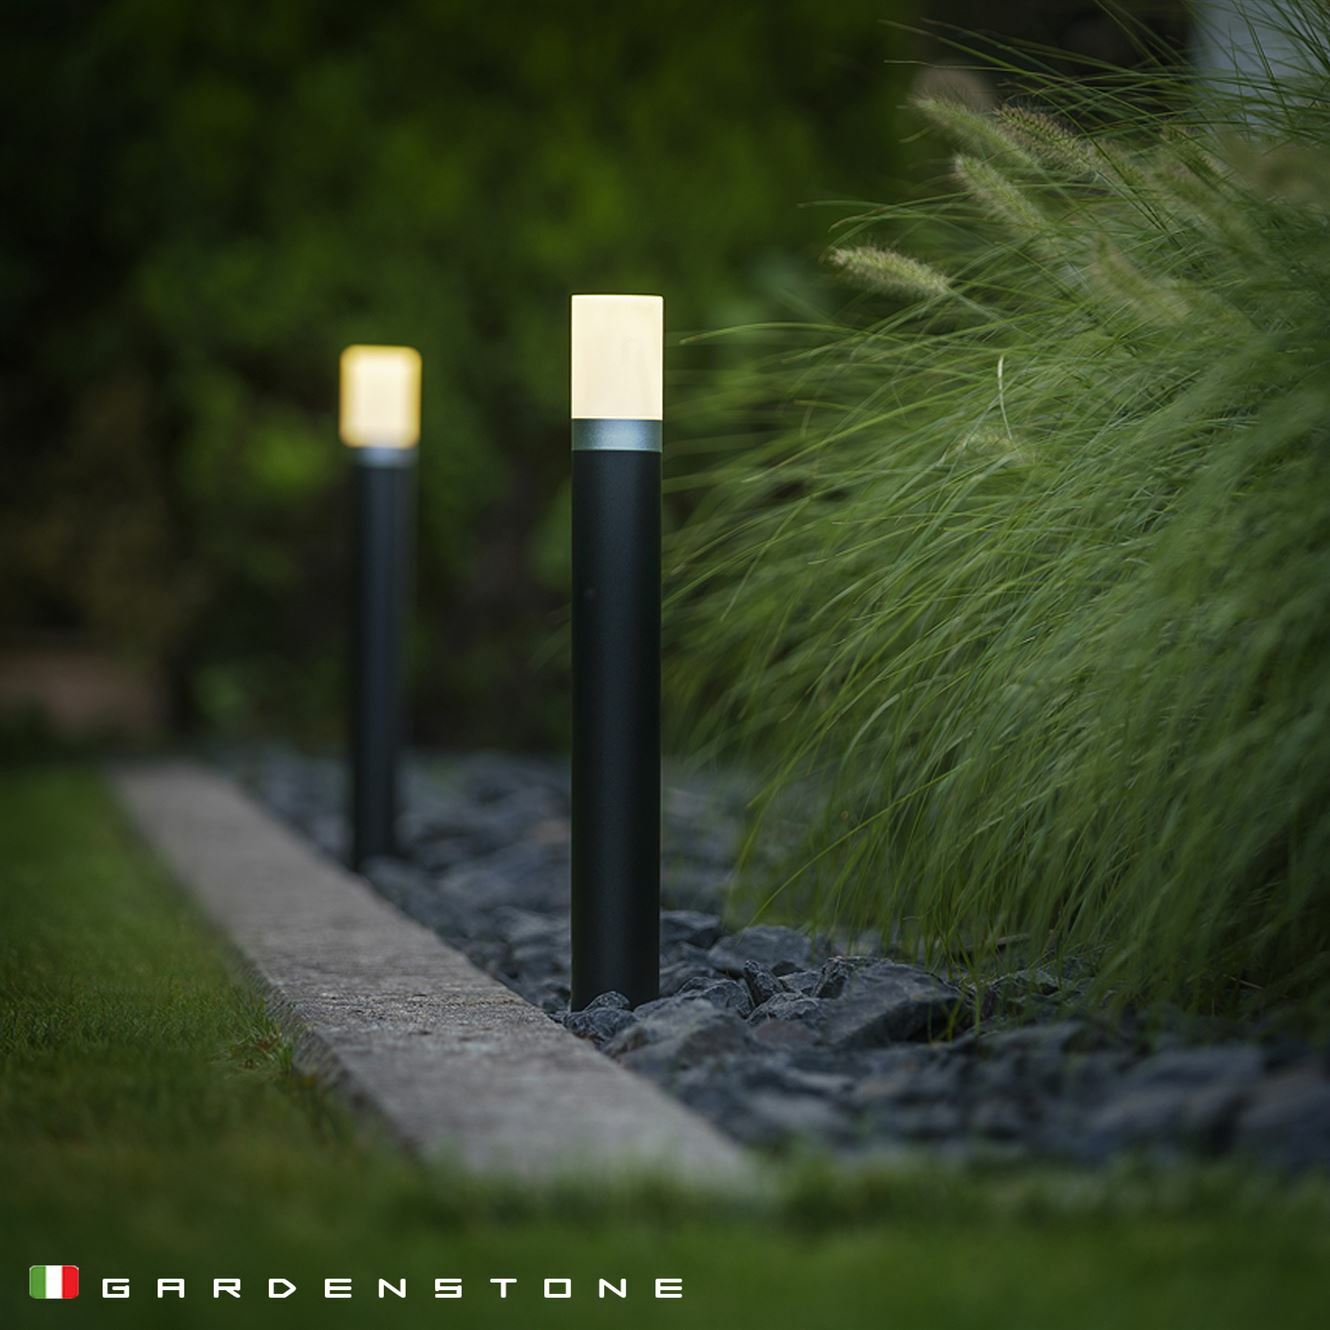 Lampioncini da giardino per rendere più luminose le serate all'aperto